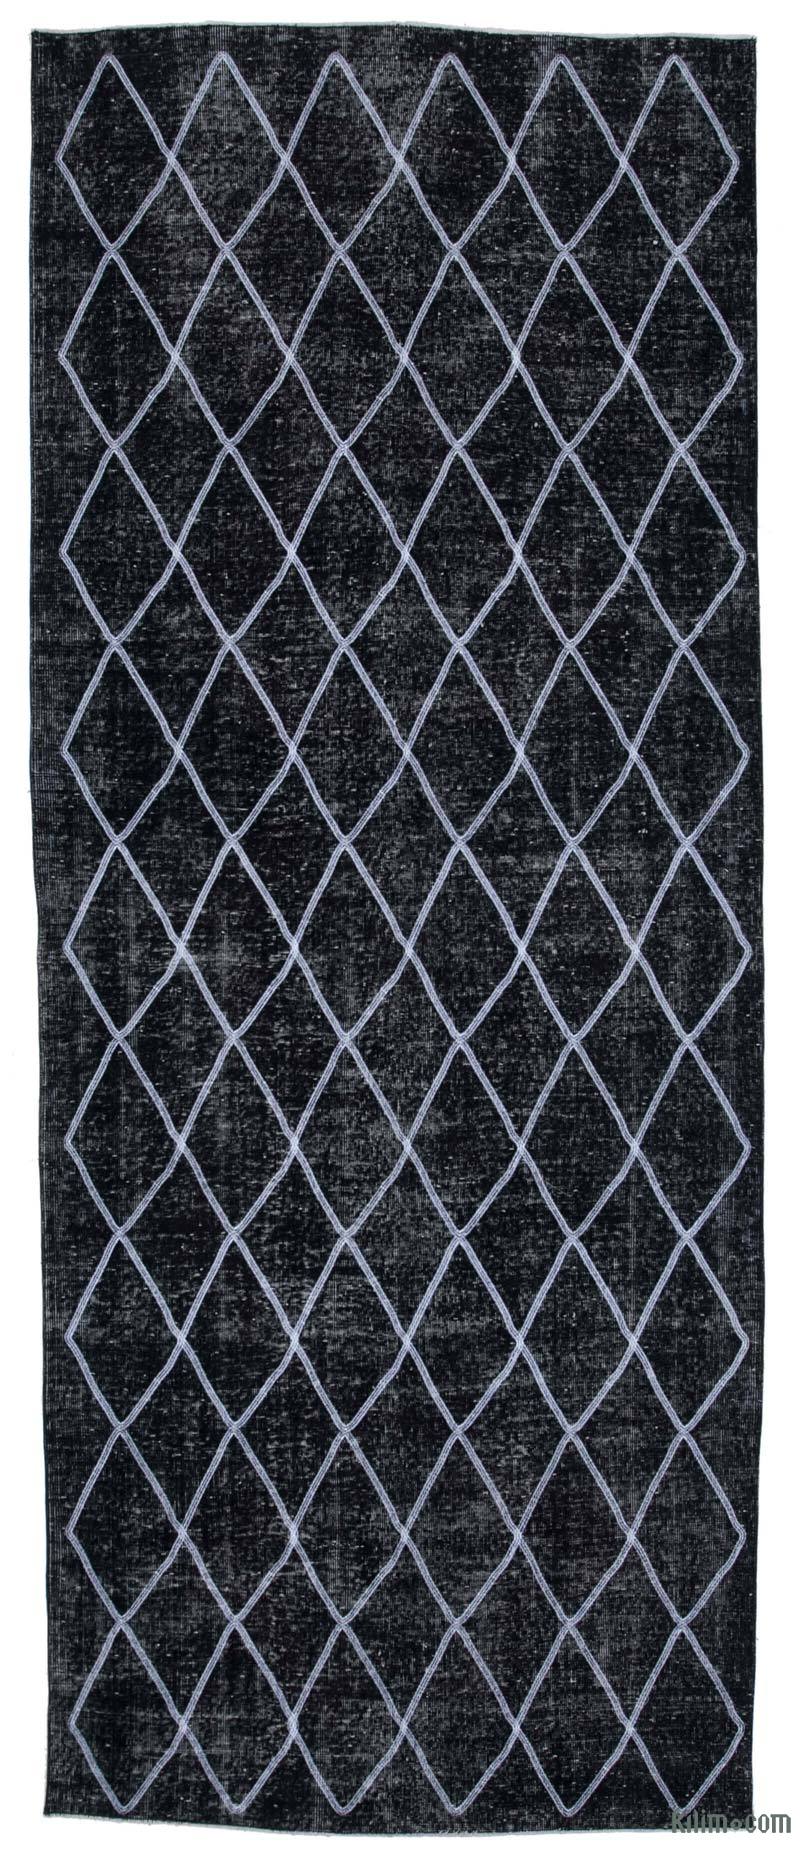 Siyah İşlemeli ve Boyalı El Dokuma Vintage Halı - 147 cm x 367 cm - K0038768